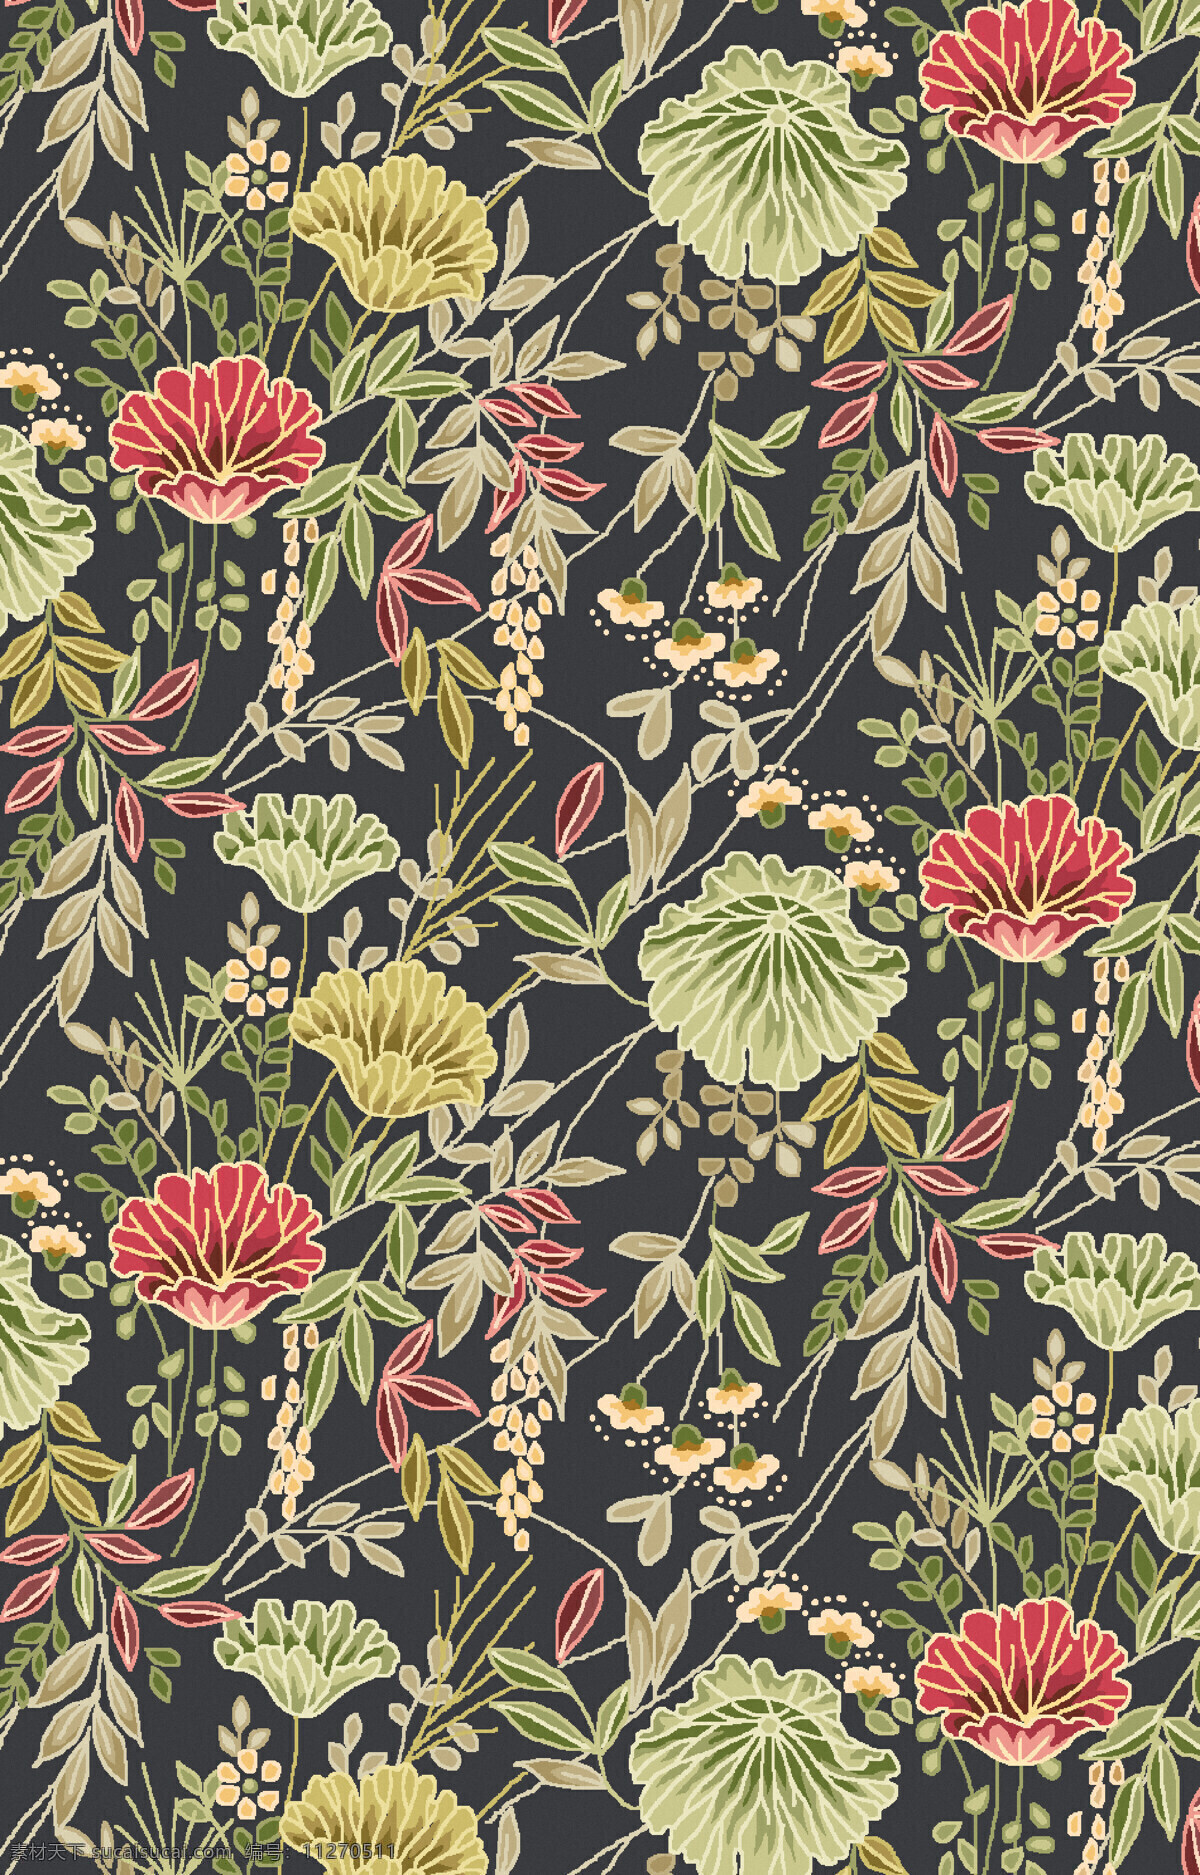 满铺花卉植物 纺织面料 沙发布艺 纹饰 纹样 地毯图案设计 花卉植物围边 底纹边框 背景底纹